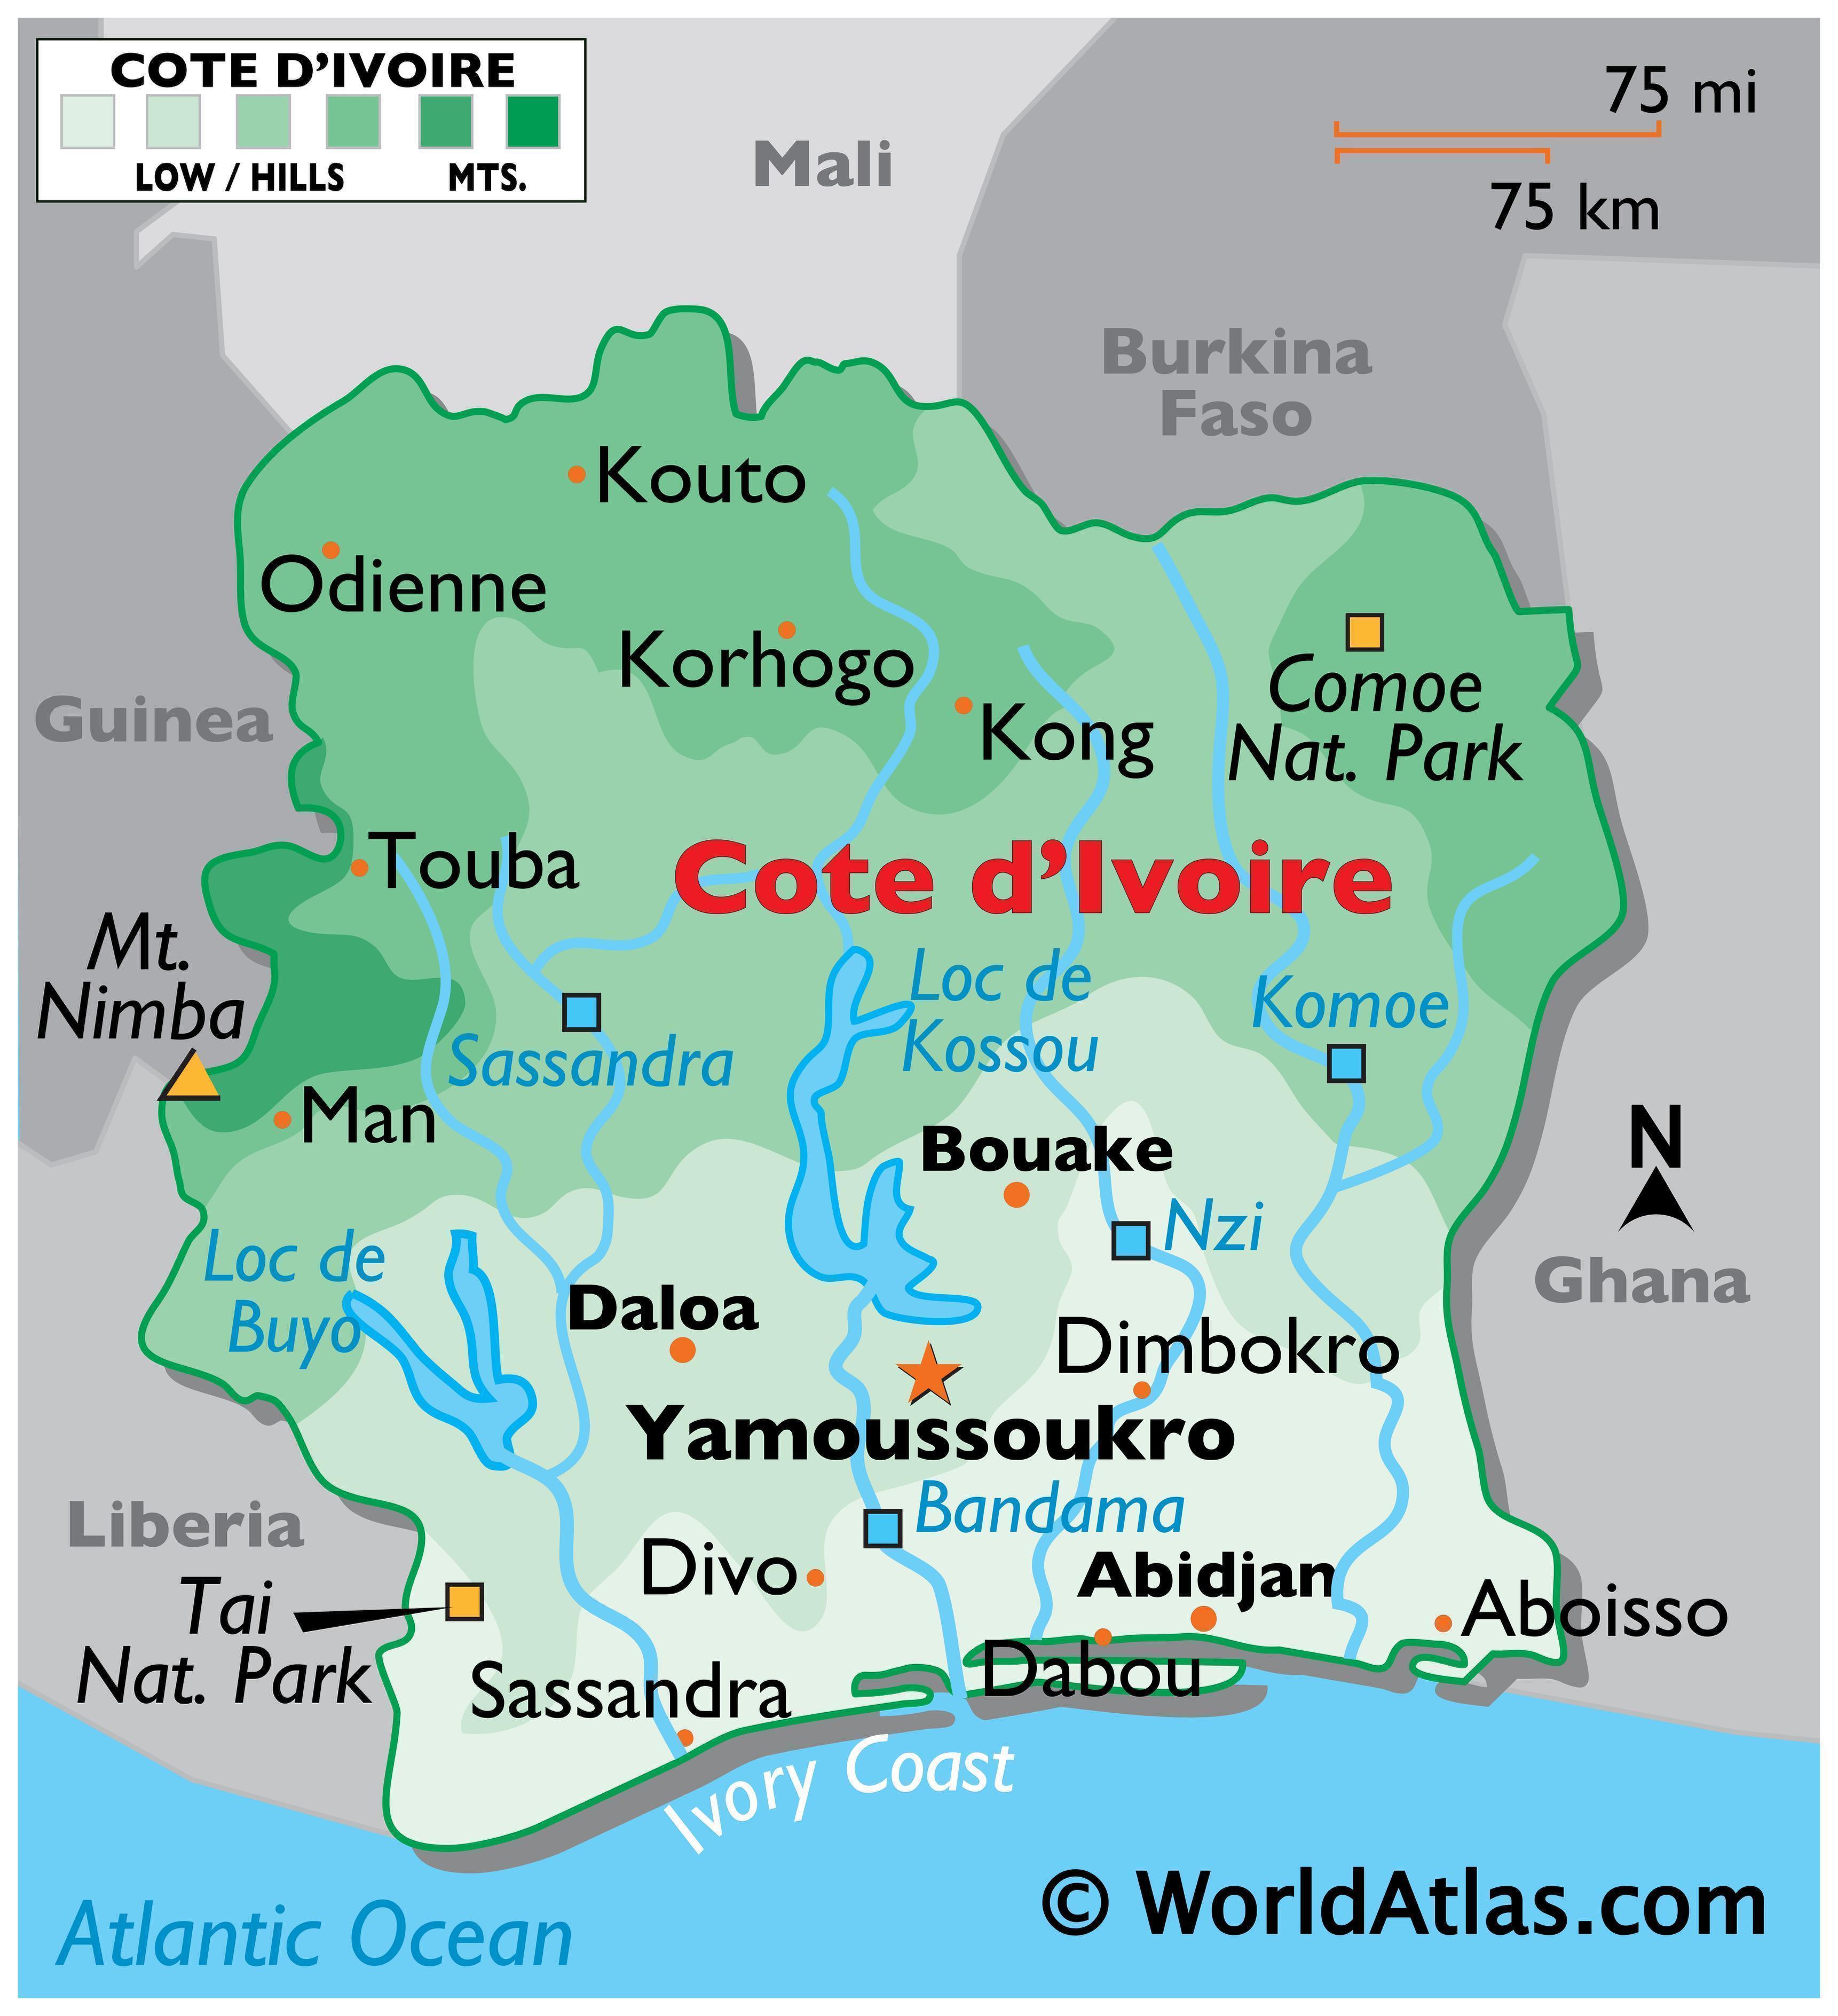 Côte d'Ivoire Travel Guide 